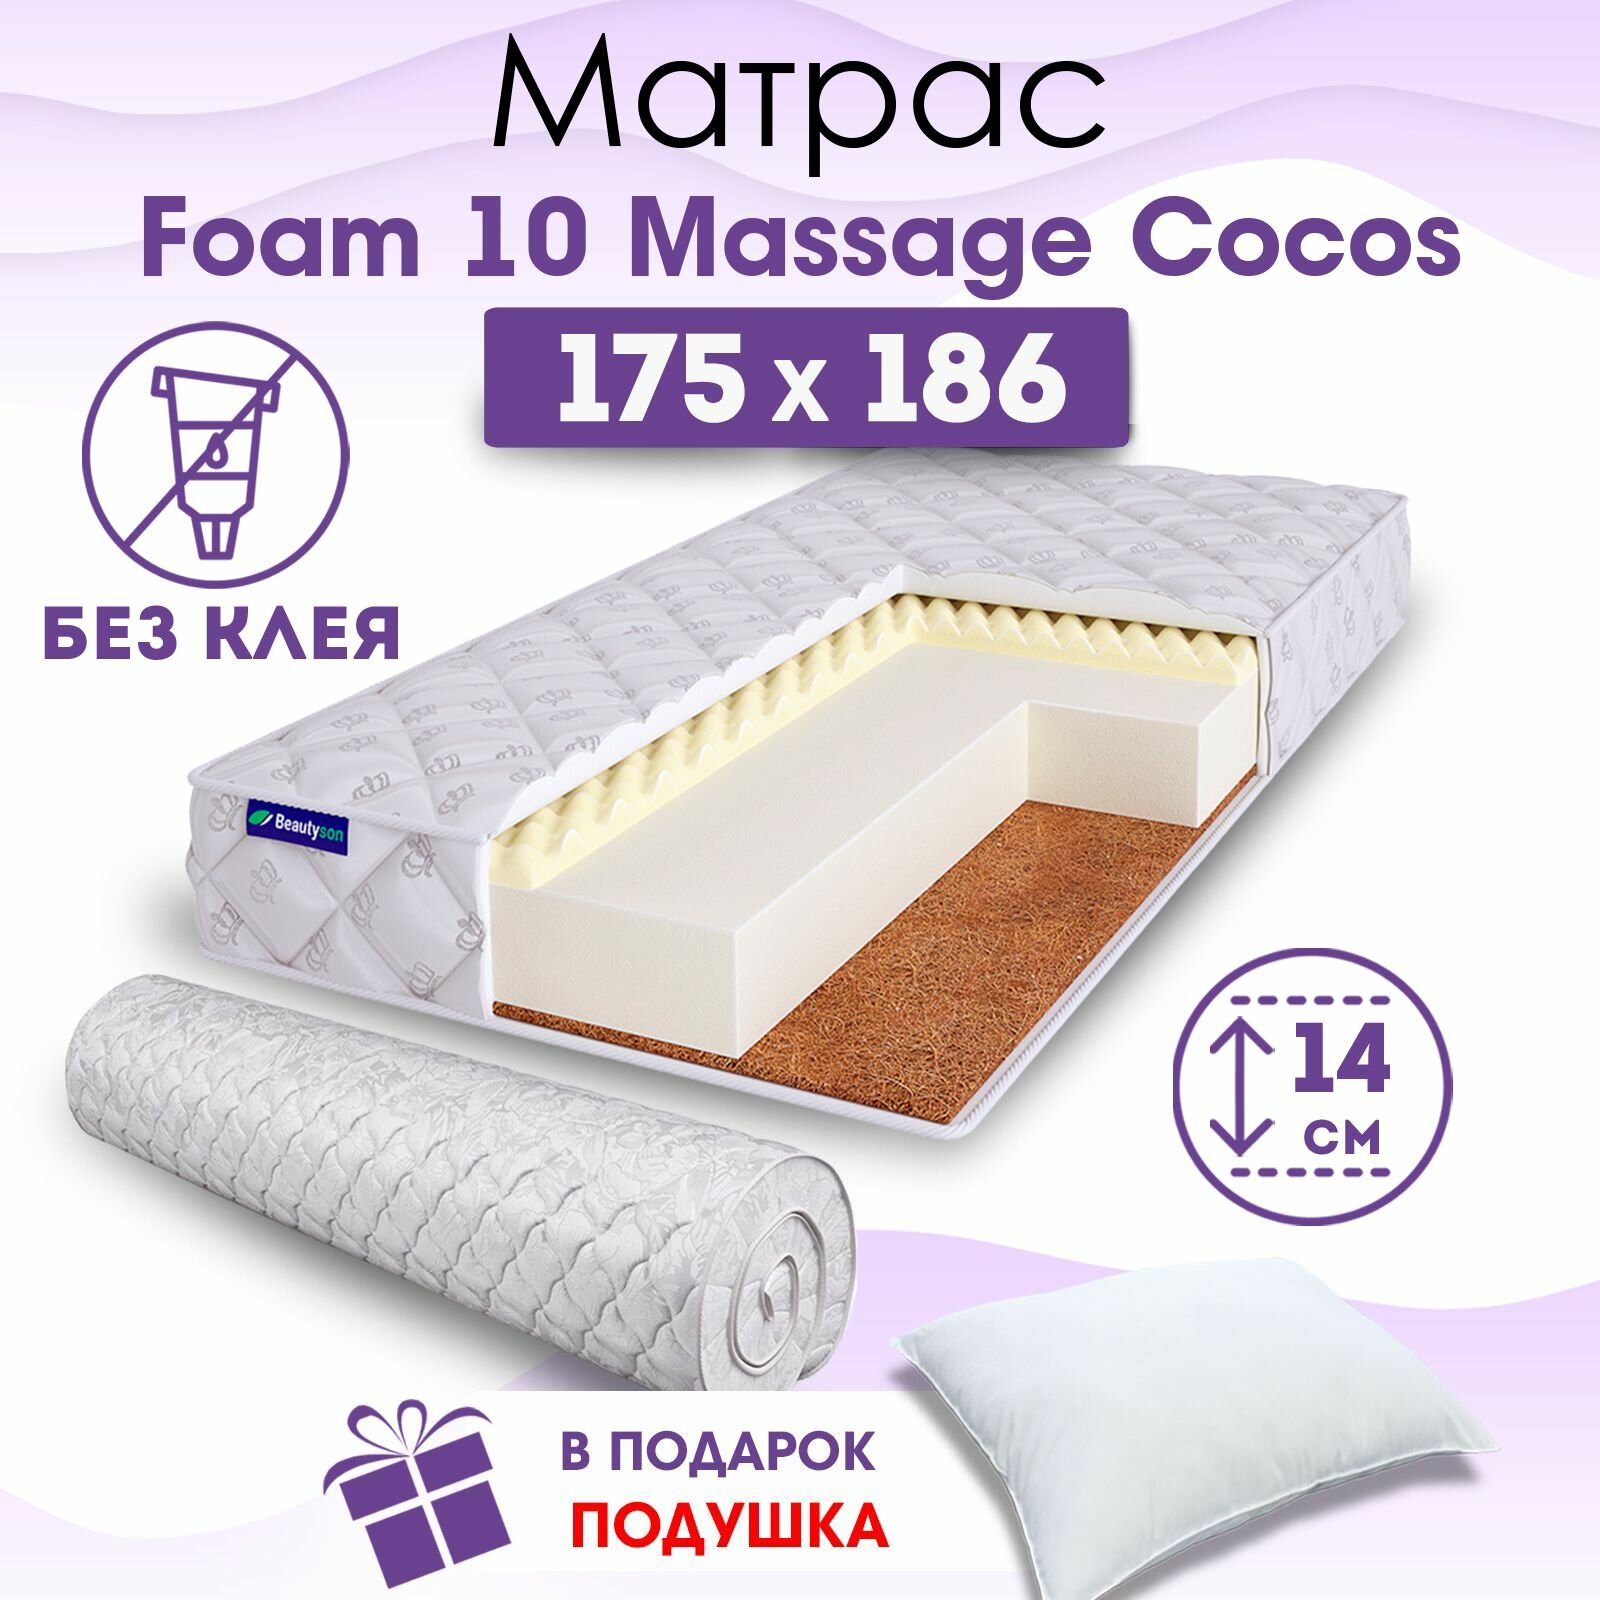 Ортопедический матрас Beautyson Foam 10 Massage Cocos без клея, 175х186, 14 см, беспружинный, двухспальный, на кровать, для дивана, мягкий, не высокий